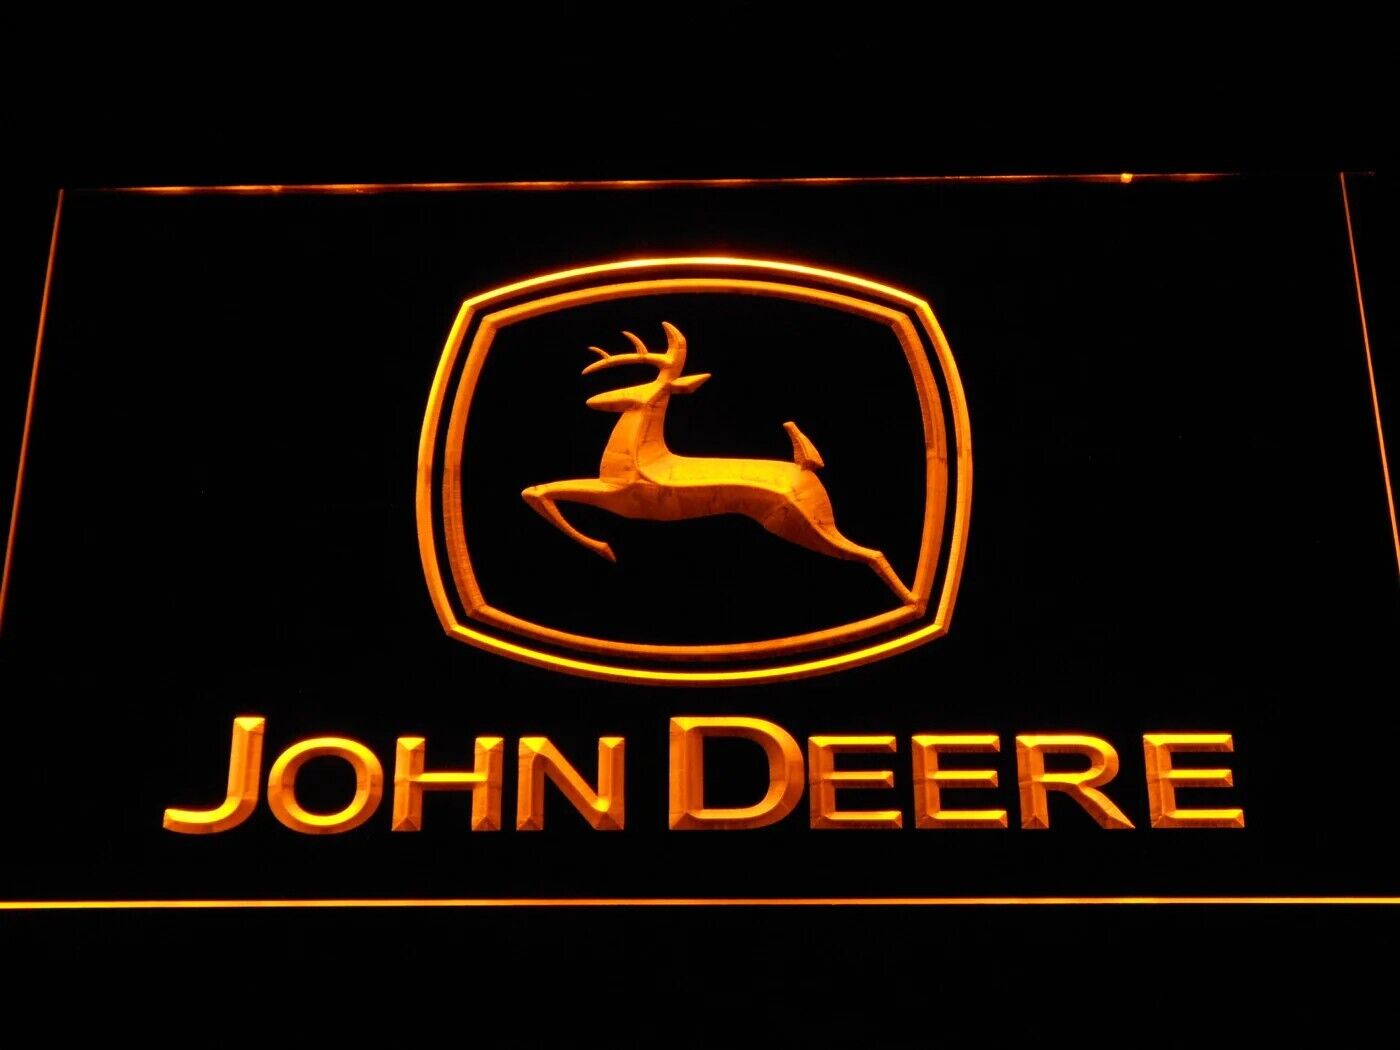 John Deere Tractors Parts and Repair Service Beer Bar Pub LED Neon Light Sign